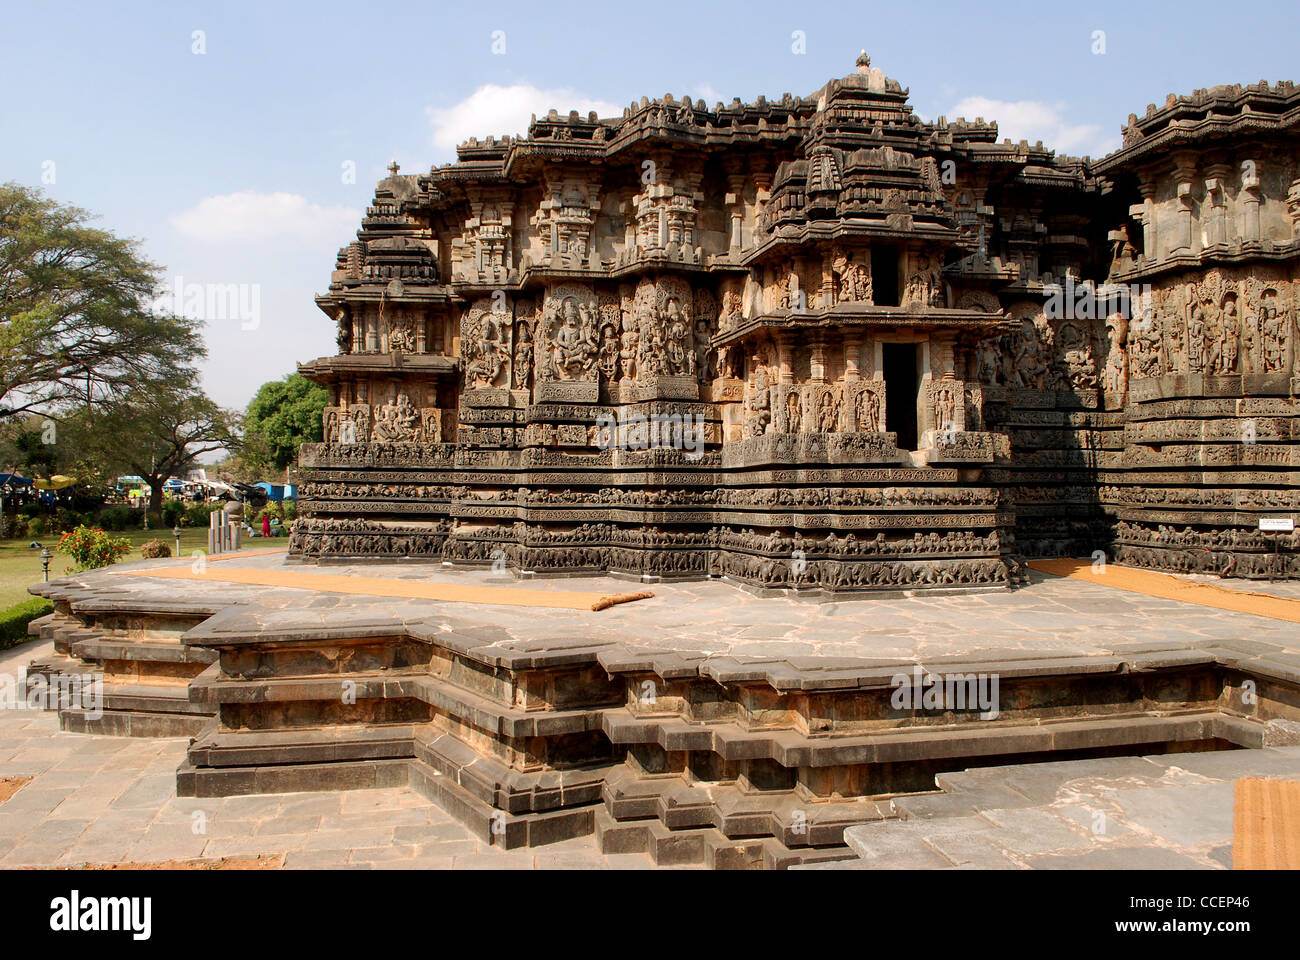 Hoysaleswara Tempel in halebidu,karnataka,india.this Hoysala Architektur ist eine Schatzkammer der feinste Steinmetzarbeiten in Indien. Stockfoto